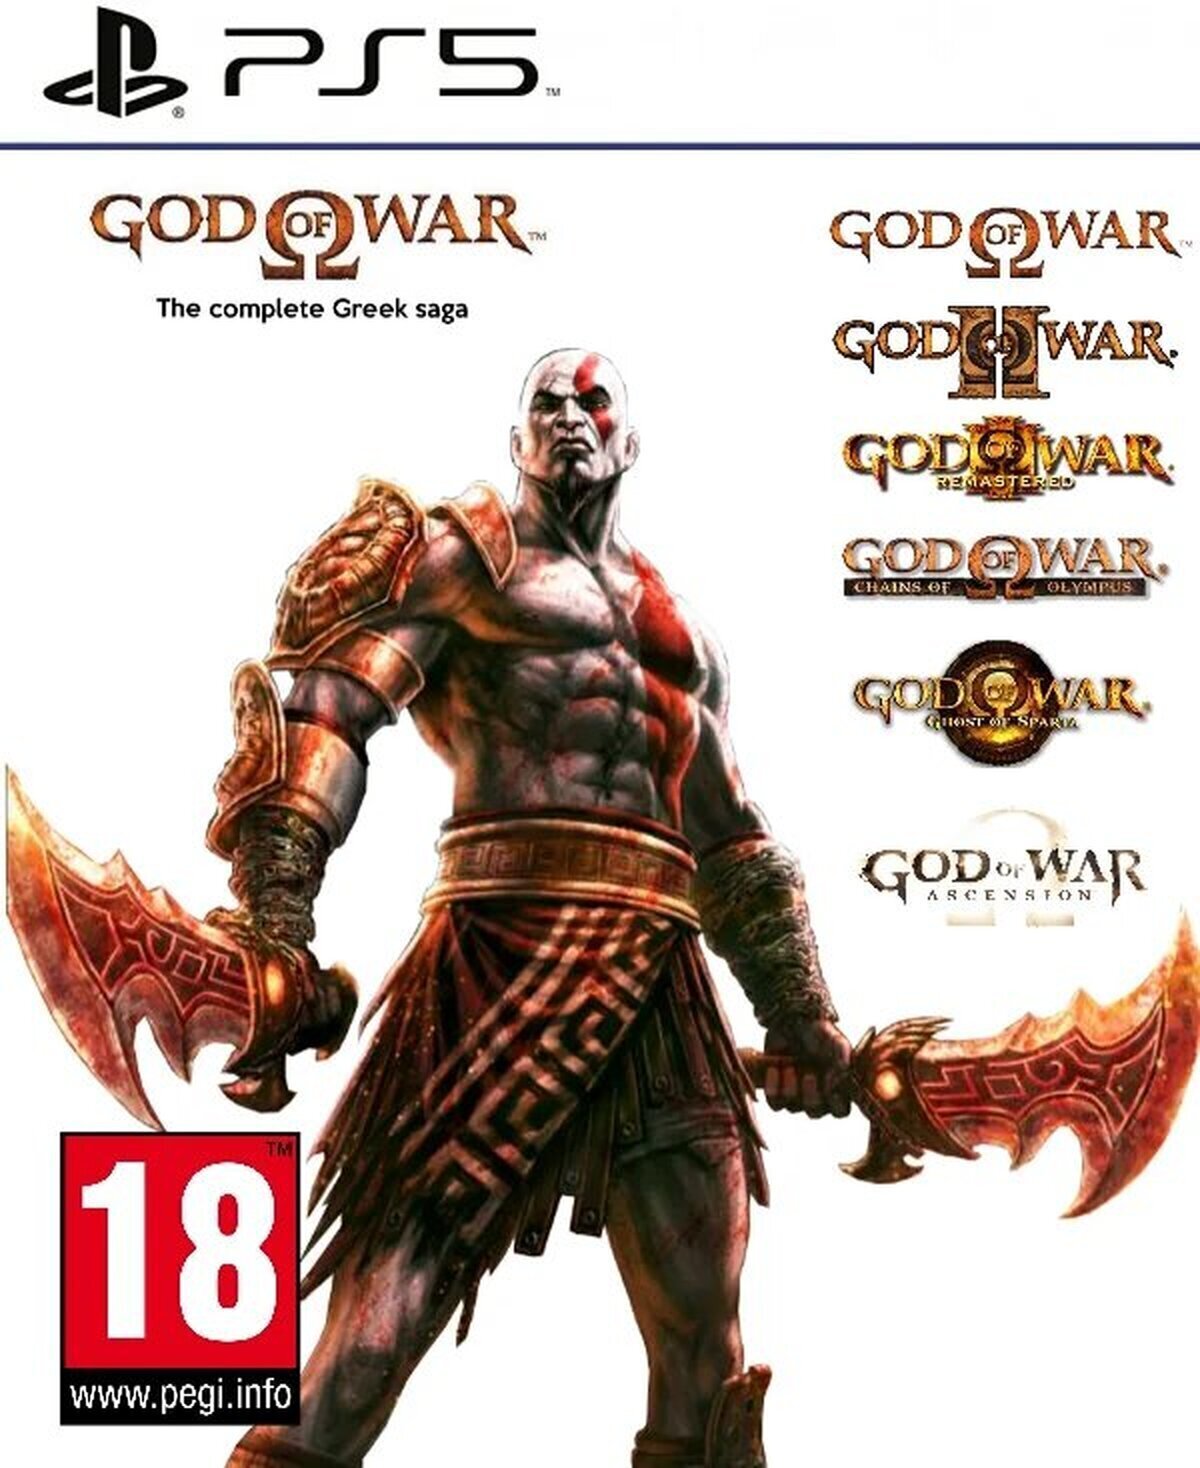 God Of War Una remasterización así se vendería como pan caliente, ojalá pronto se haga realidad. Por